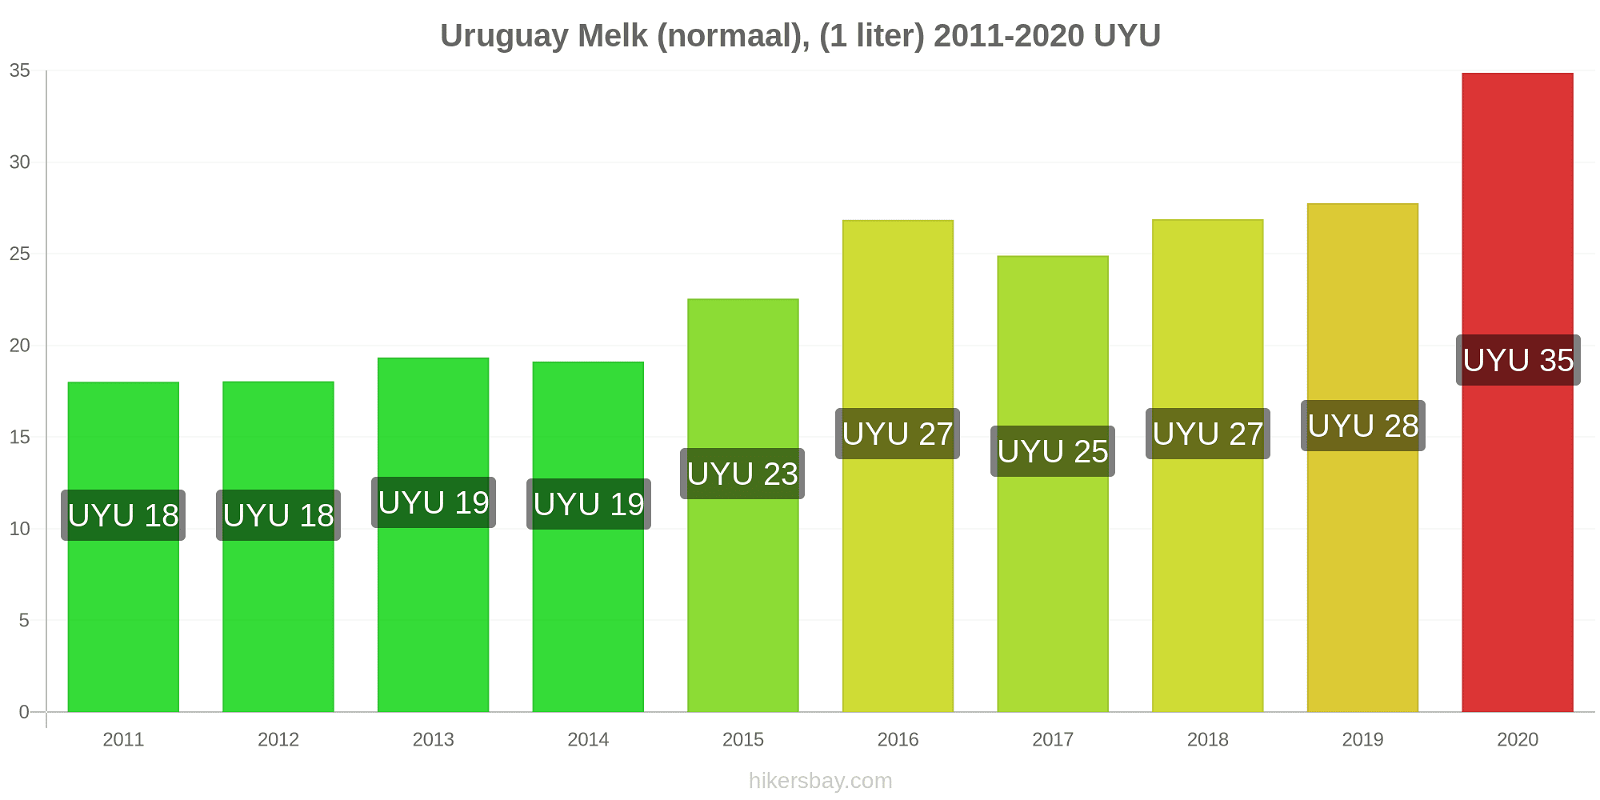 Uruguay prijswijzigingen Melk (regelmatige), (1 liter) hikersbay.com